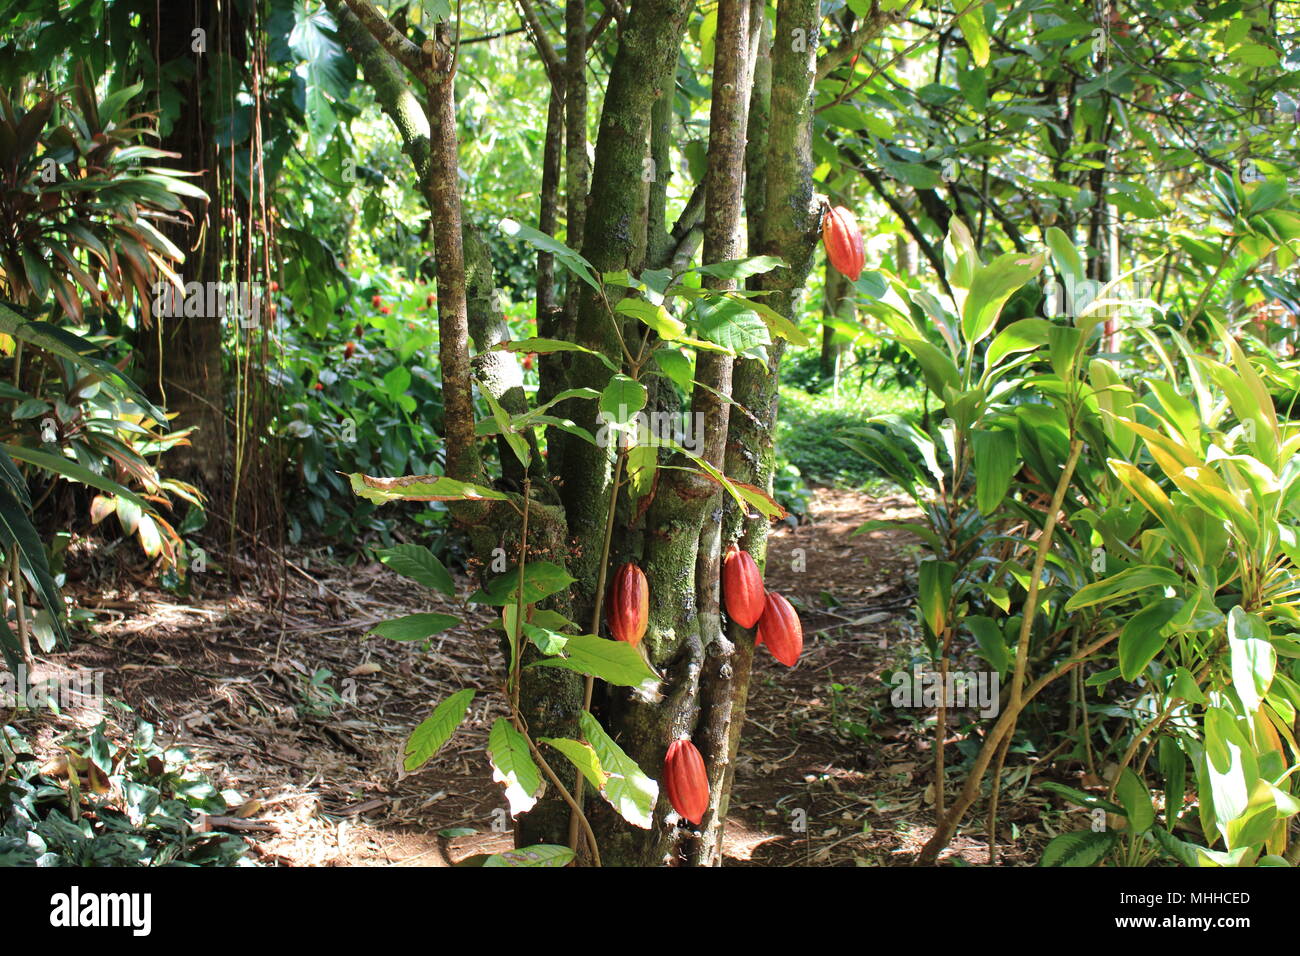 Mature baccelli di cacao su un albero. Theobroma cacao, America tropicale. Foto Stock